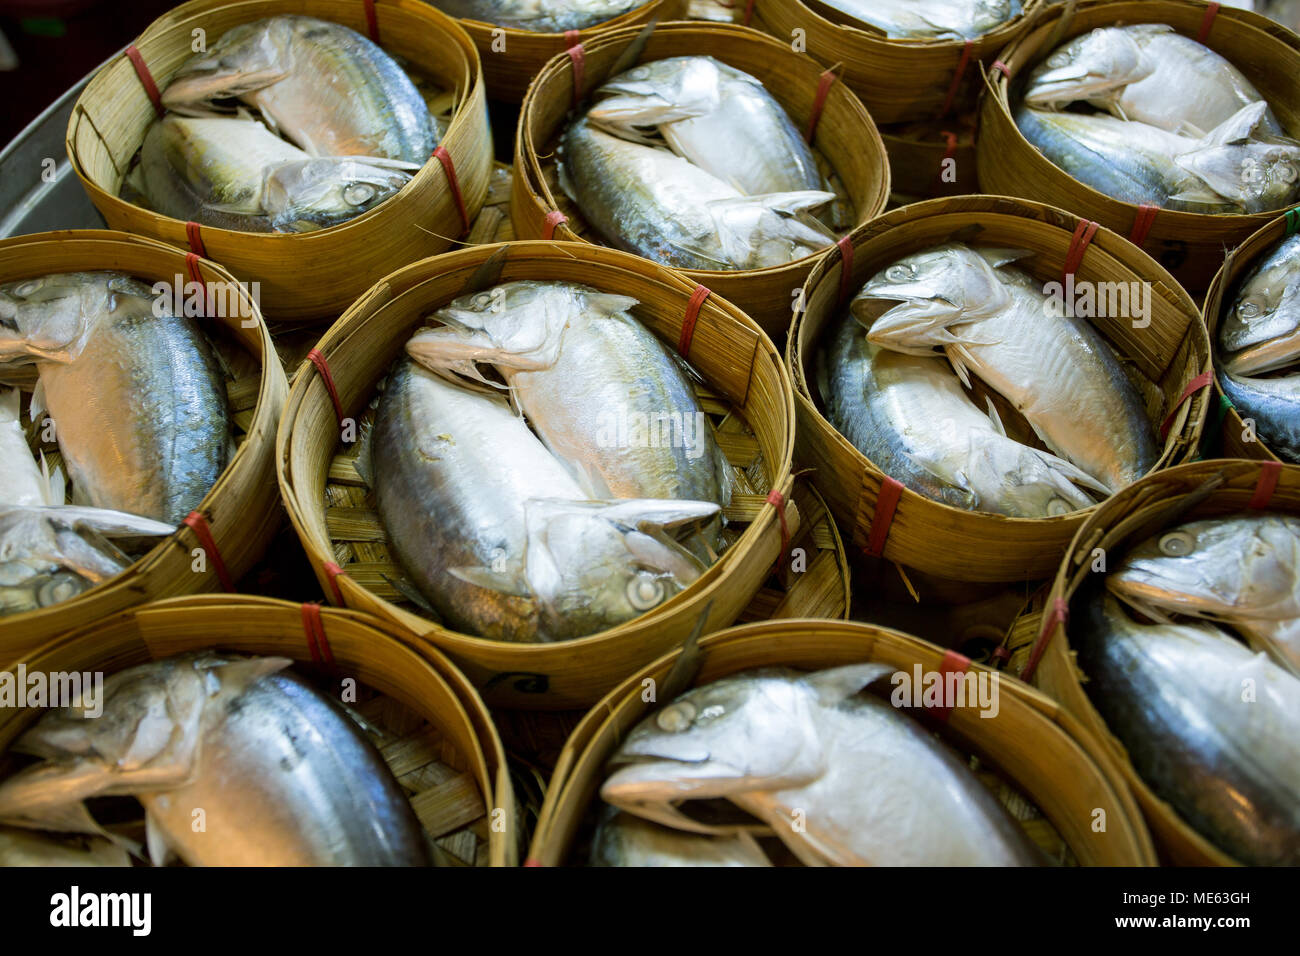 Paniers de maquereau poisson dans les marchés de rue thaïlandaise Banque D'Images